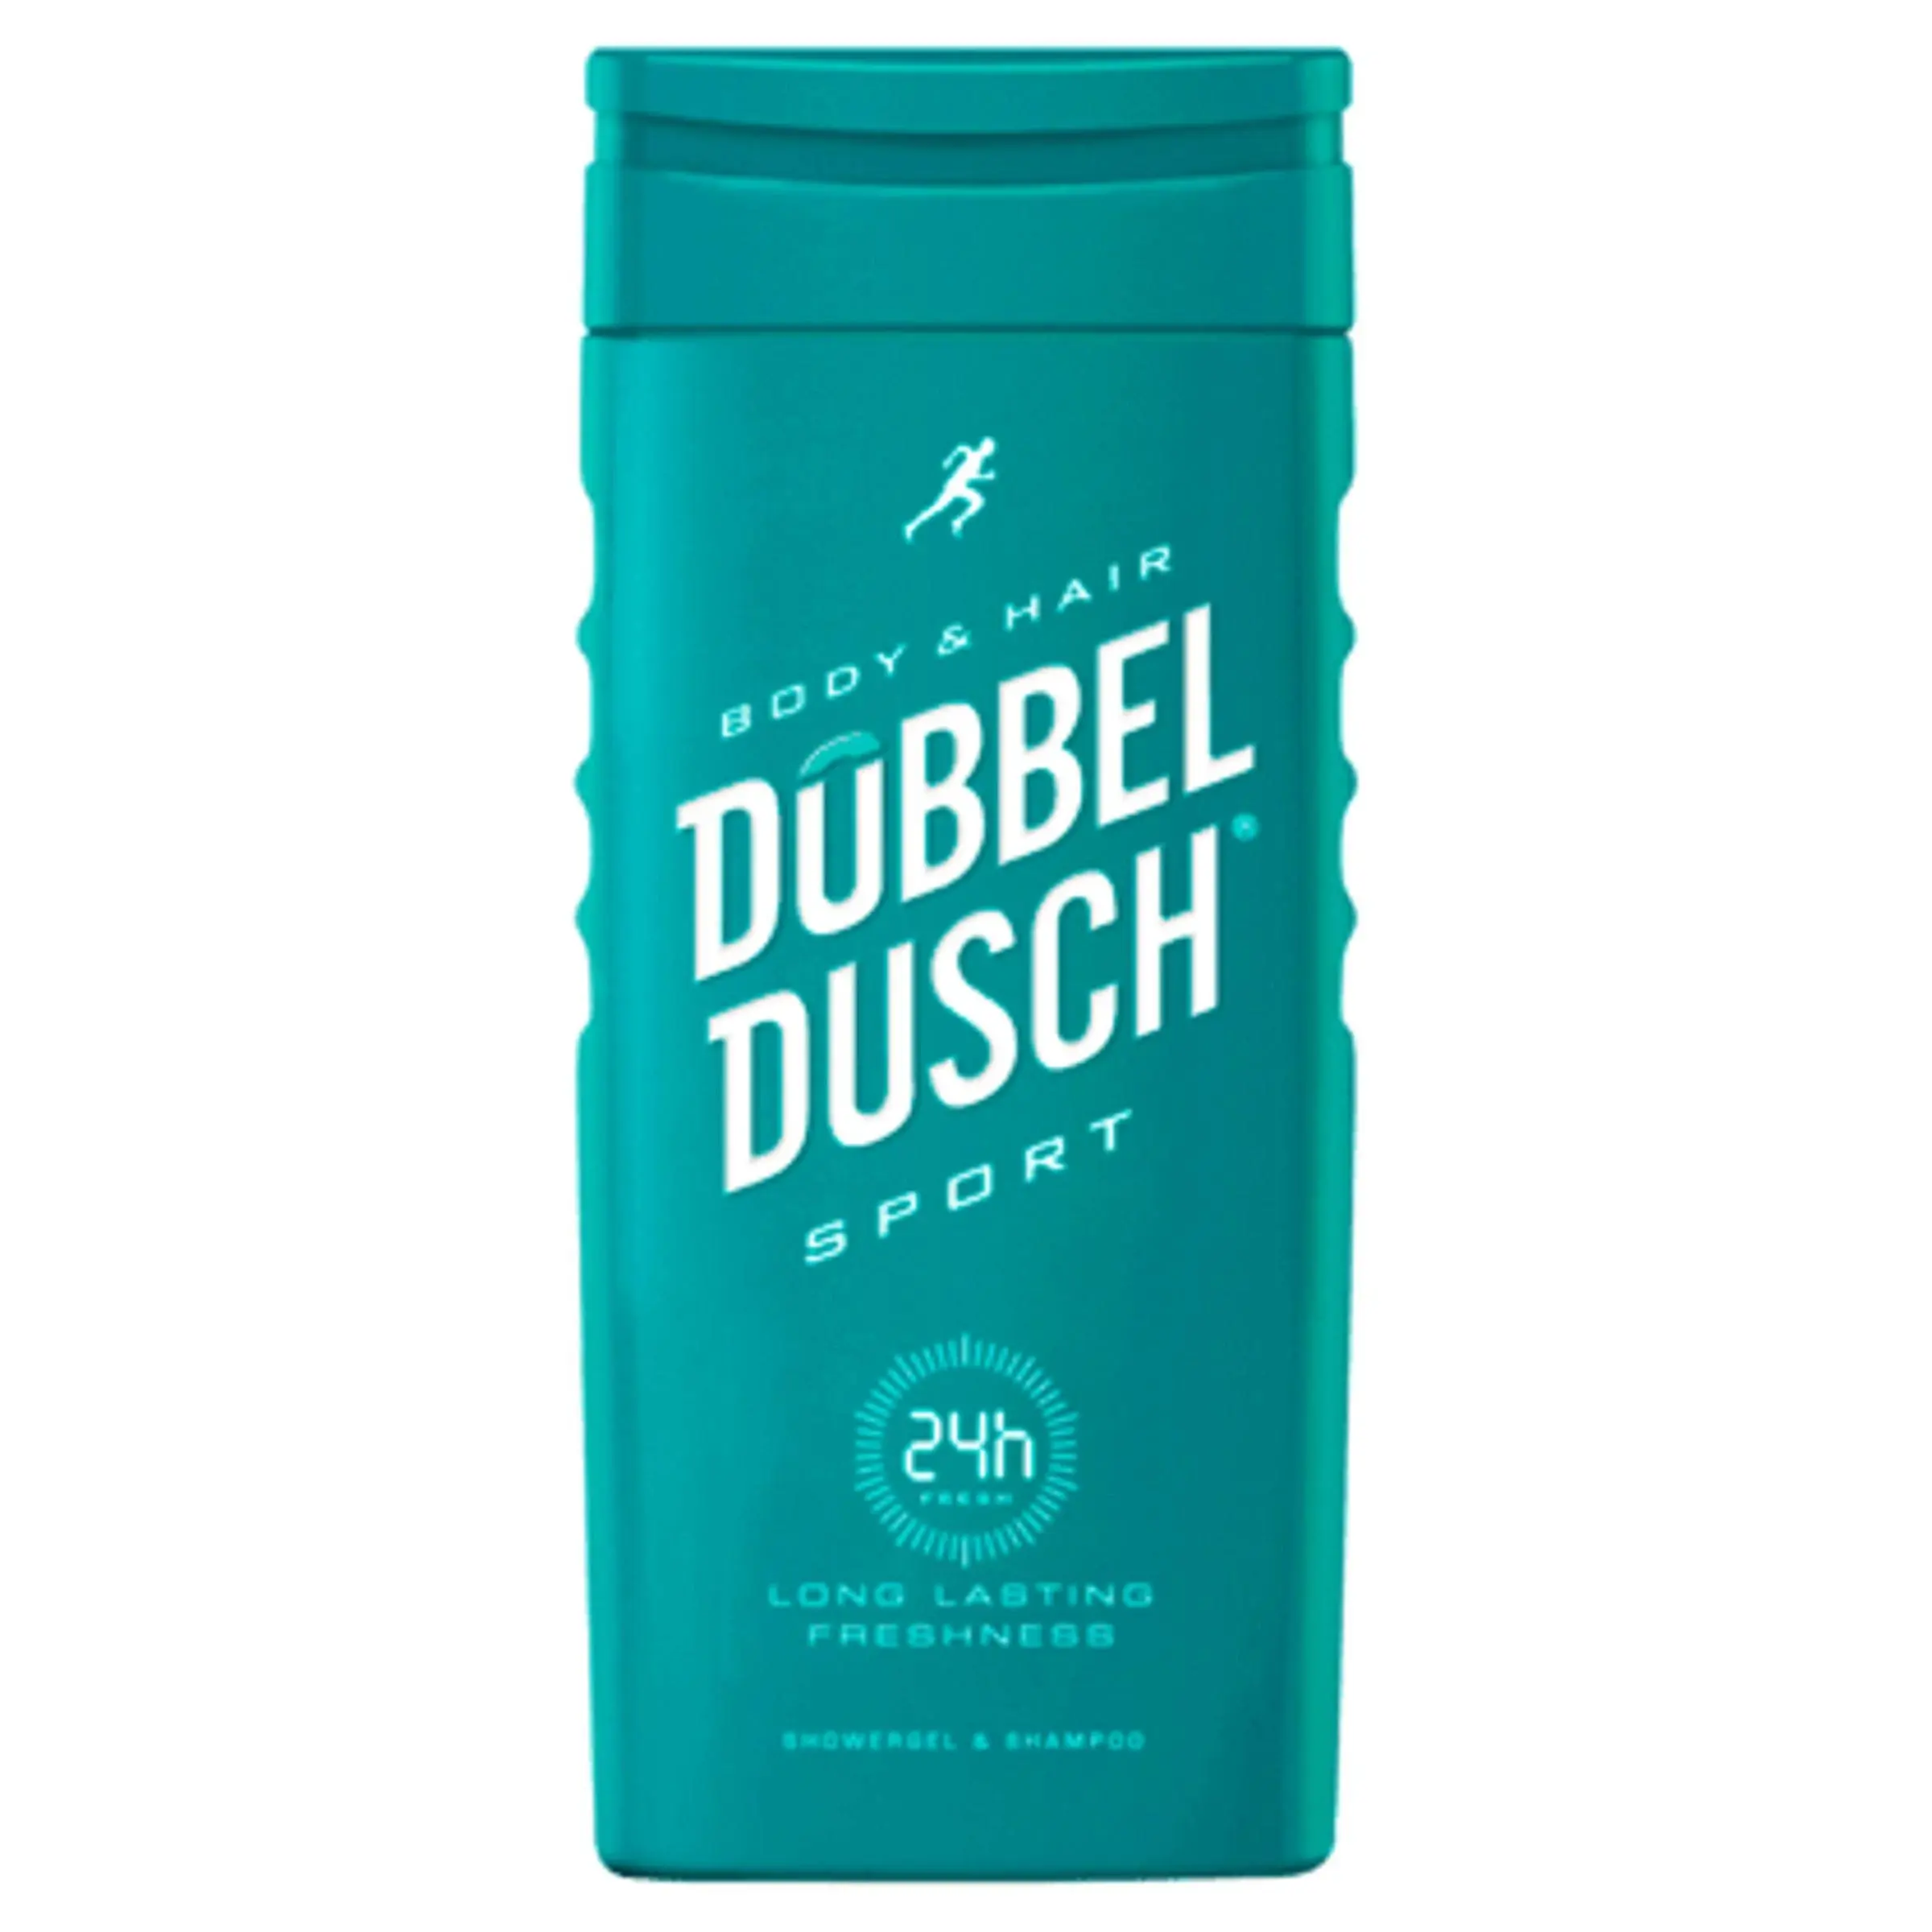 Dobbeldusch Douchegel Sport (250 ml)